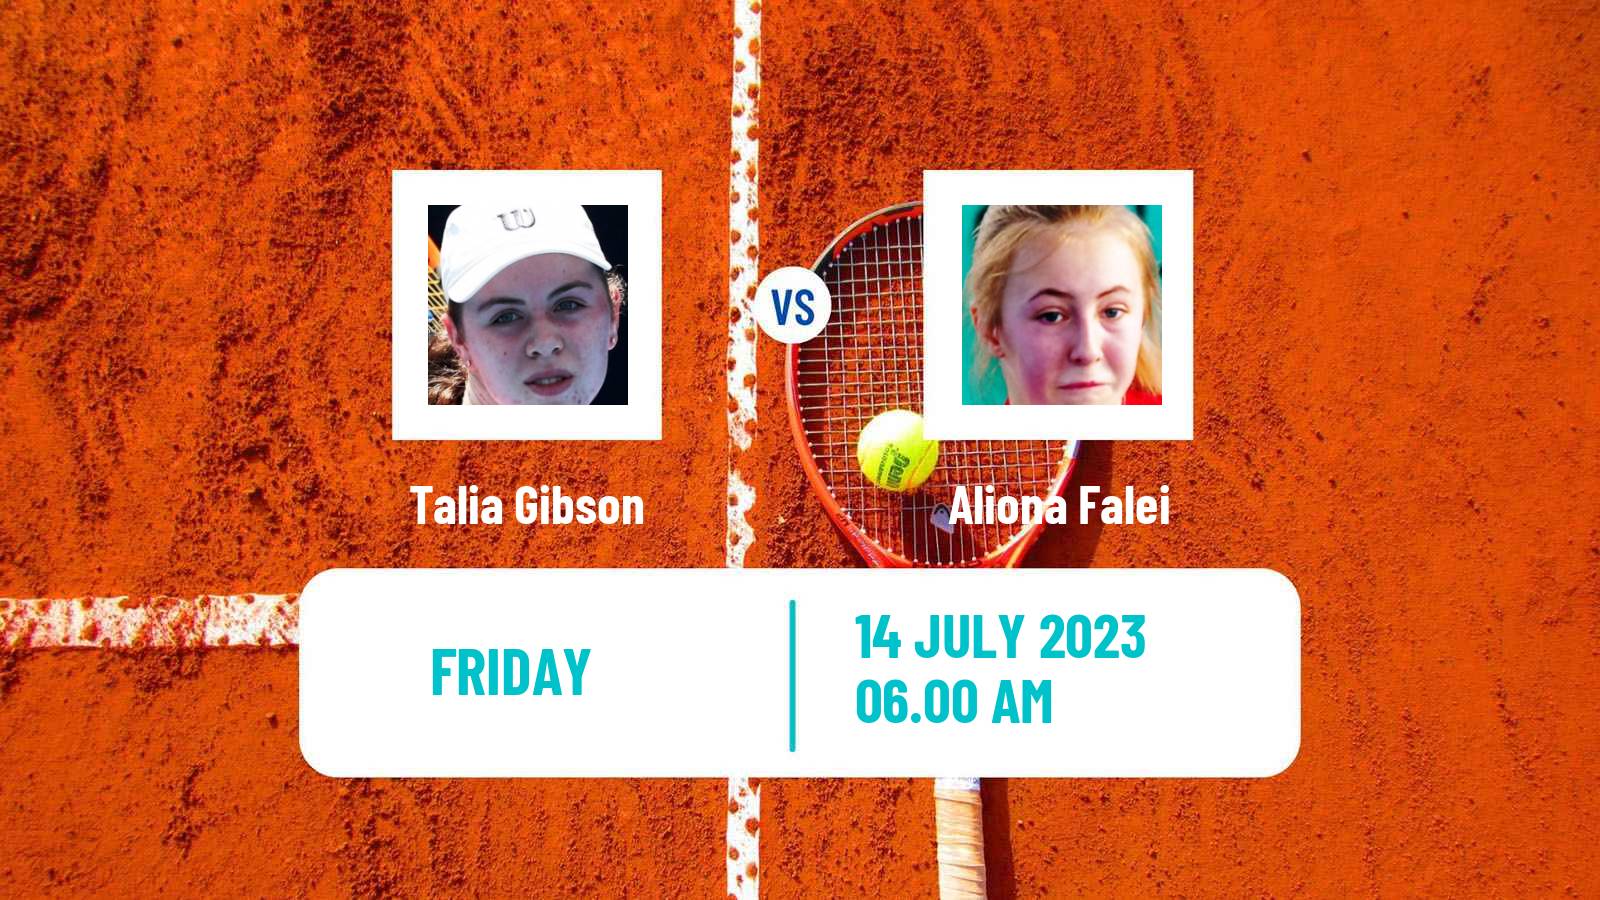 Tennis ITF W25 Corroios Seixal Women Talia Gibson - Aliona Falei